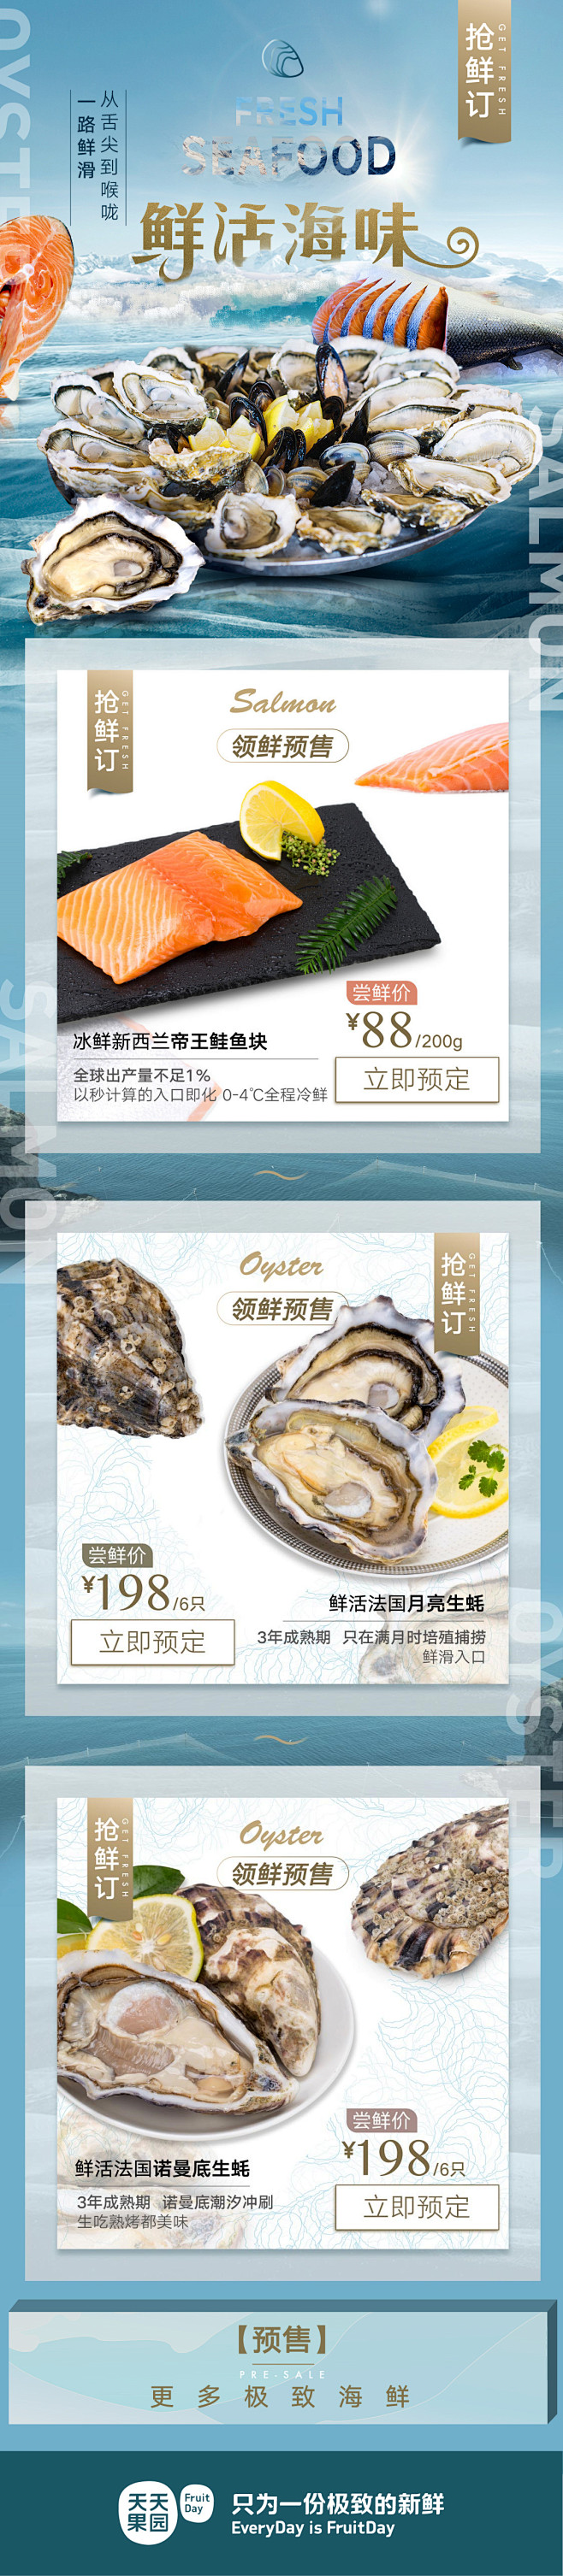 3503 海鲜水产 三文鱼 生蚝